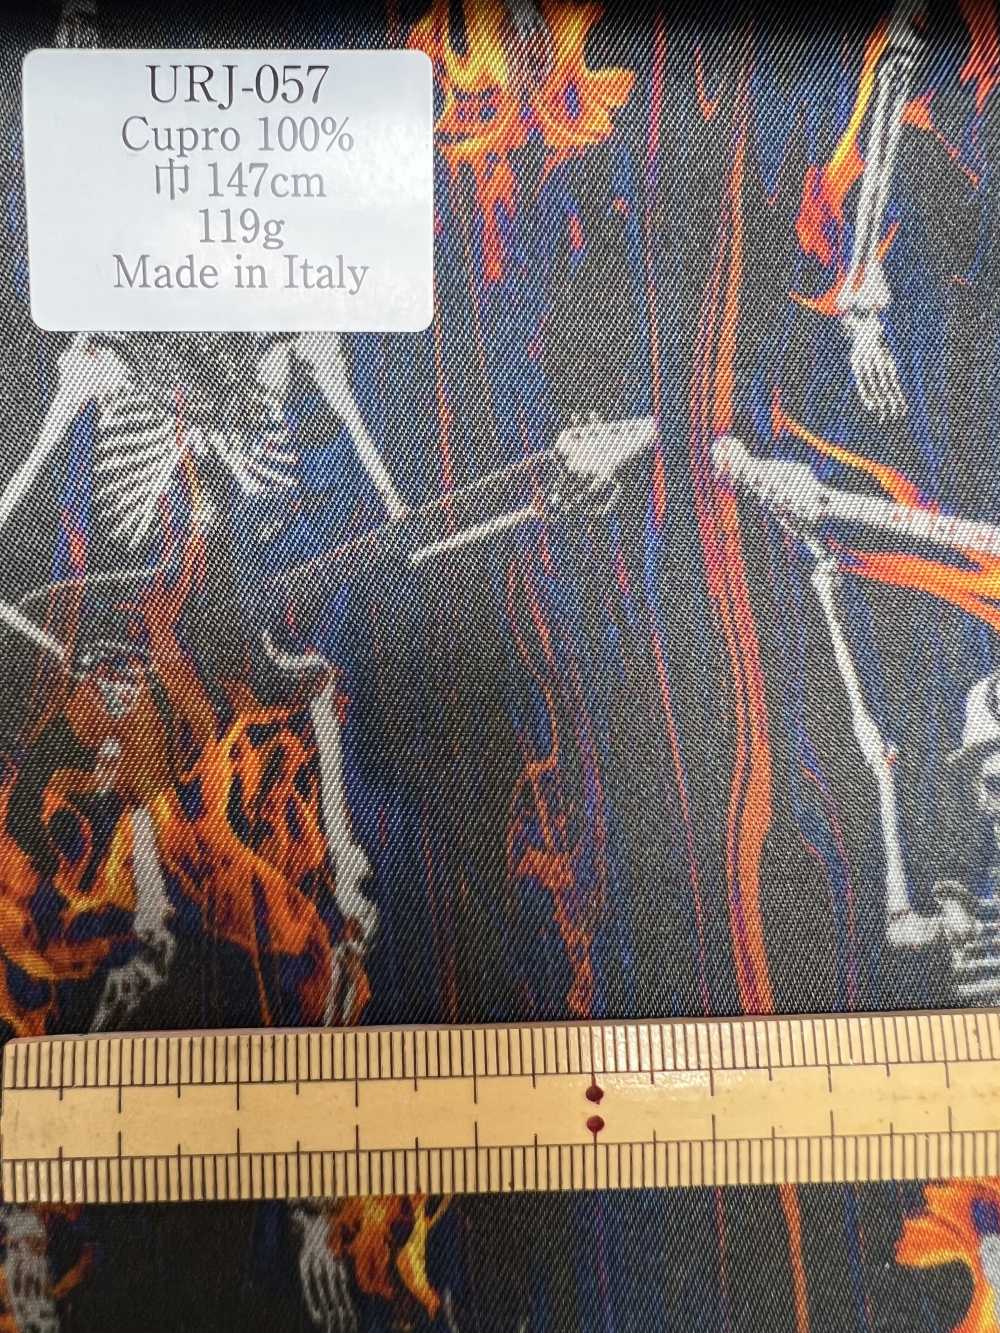 URJ-057 Hecho En Italia 100% Cupra Forro Con Estampado Skull Rock Pattern[Recubrimiento] TCS